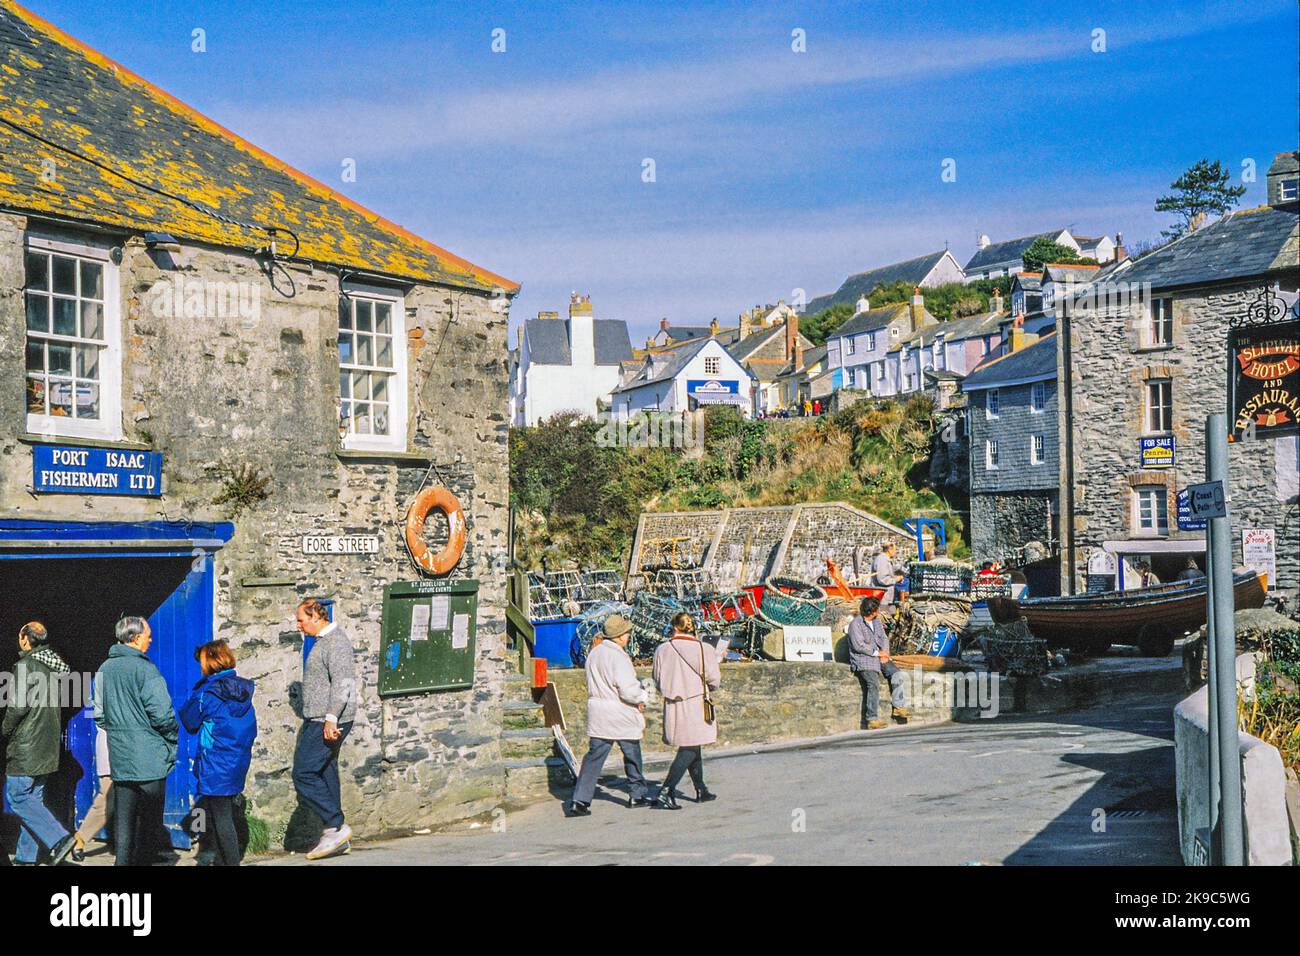 Port Issac Harbour 80, Cornovaglia, Inghilterra, Regno Unito periodo fotografia industria della pesca Foto Stock